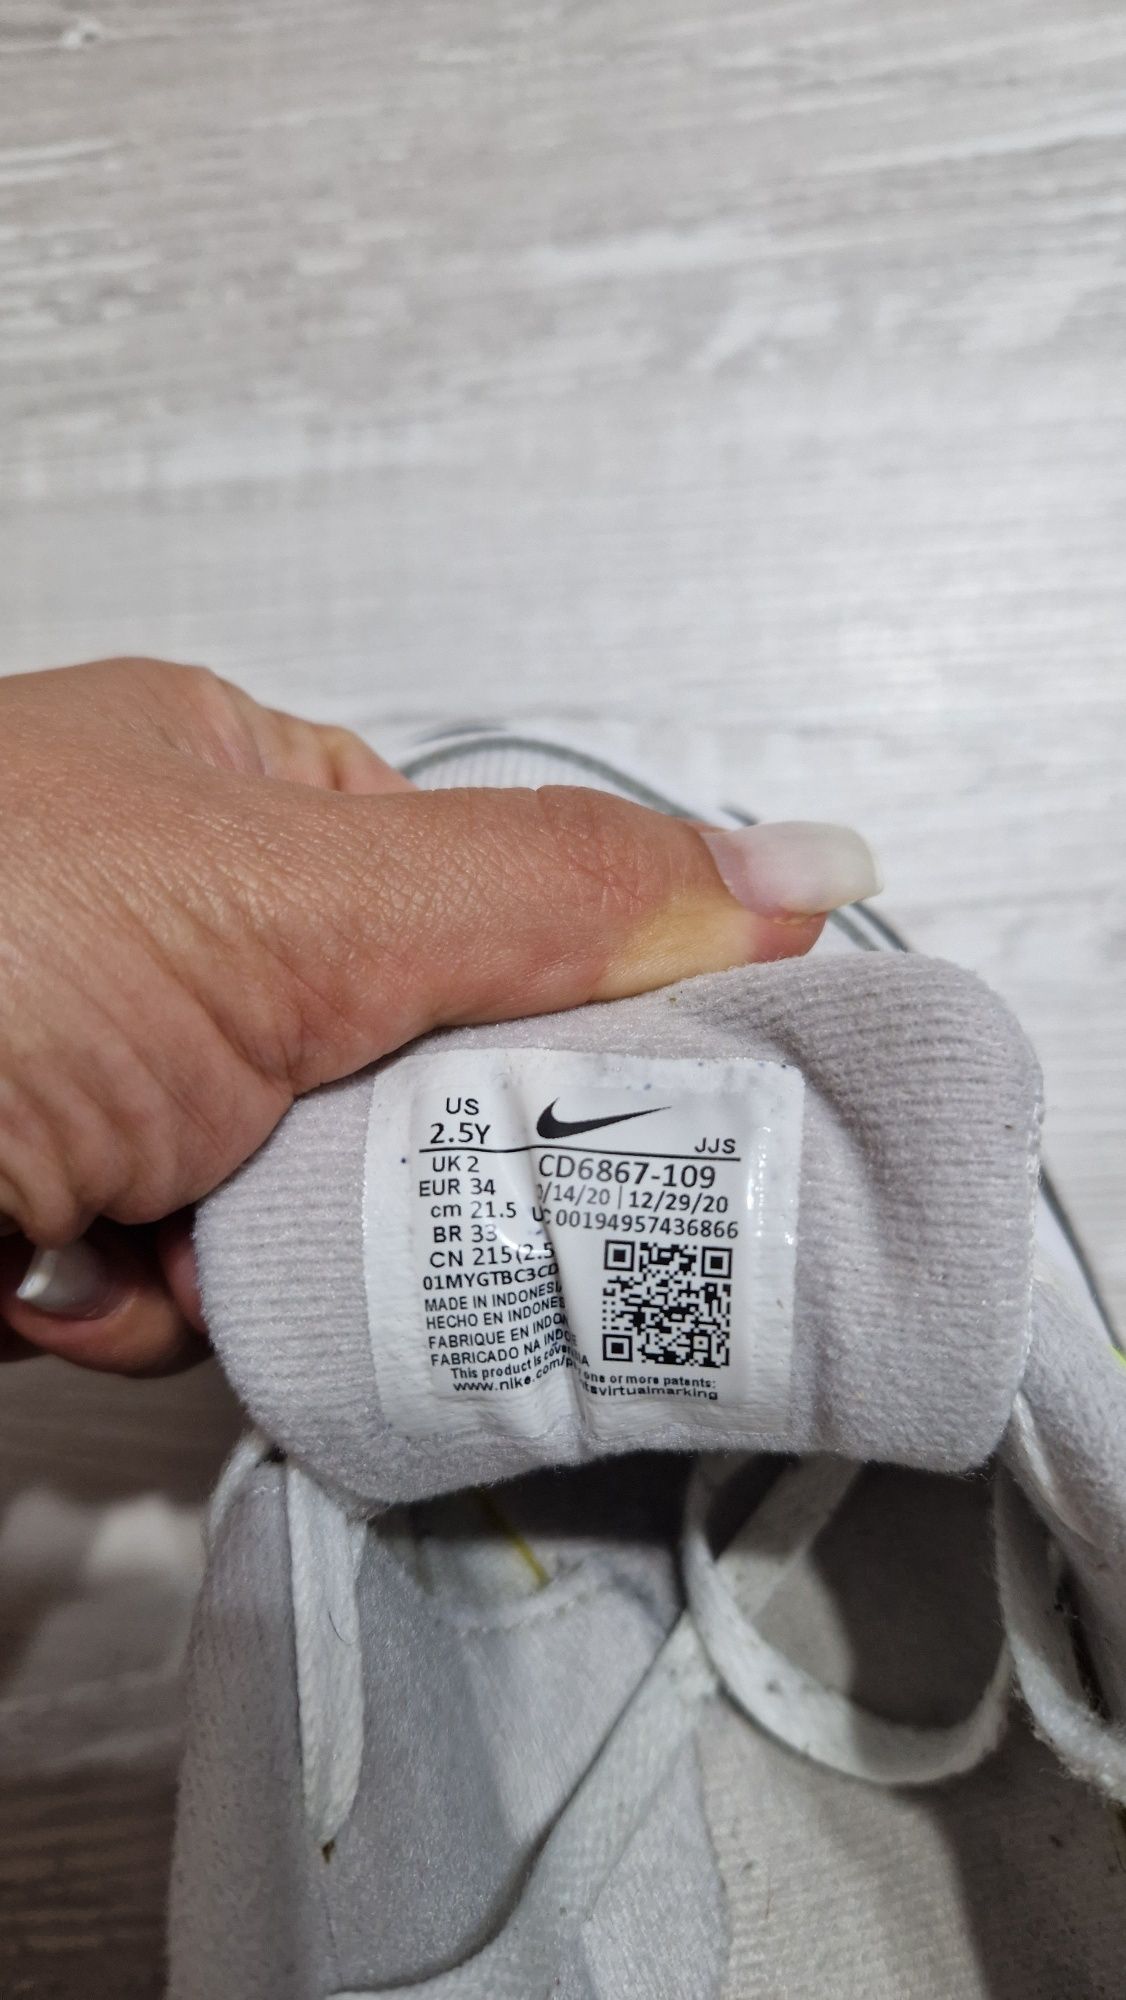 Vand adidasi Nike airmax nr 34 21.5 cm